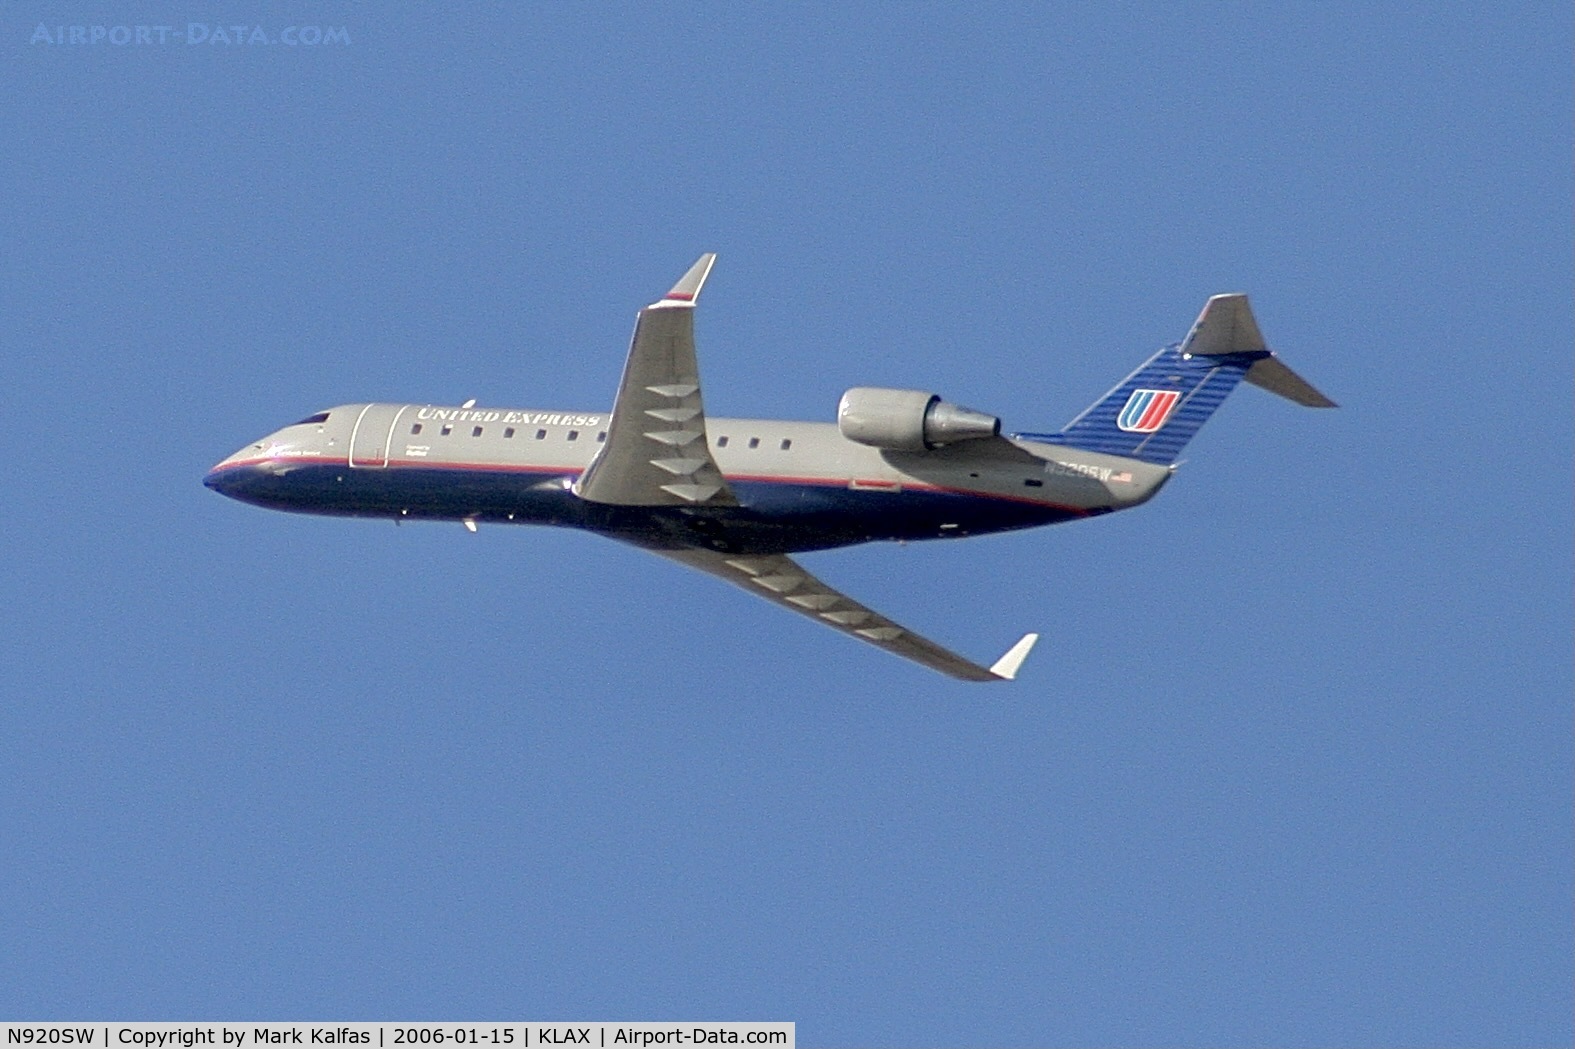 N920SW, 2002 Bombardier CRJ-200LR (CL-600-2B19) C/N 7660, SkyWest/United Express, Bombardier CRJ-200LR N920SW, departing 25RLAX